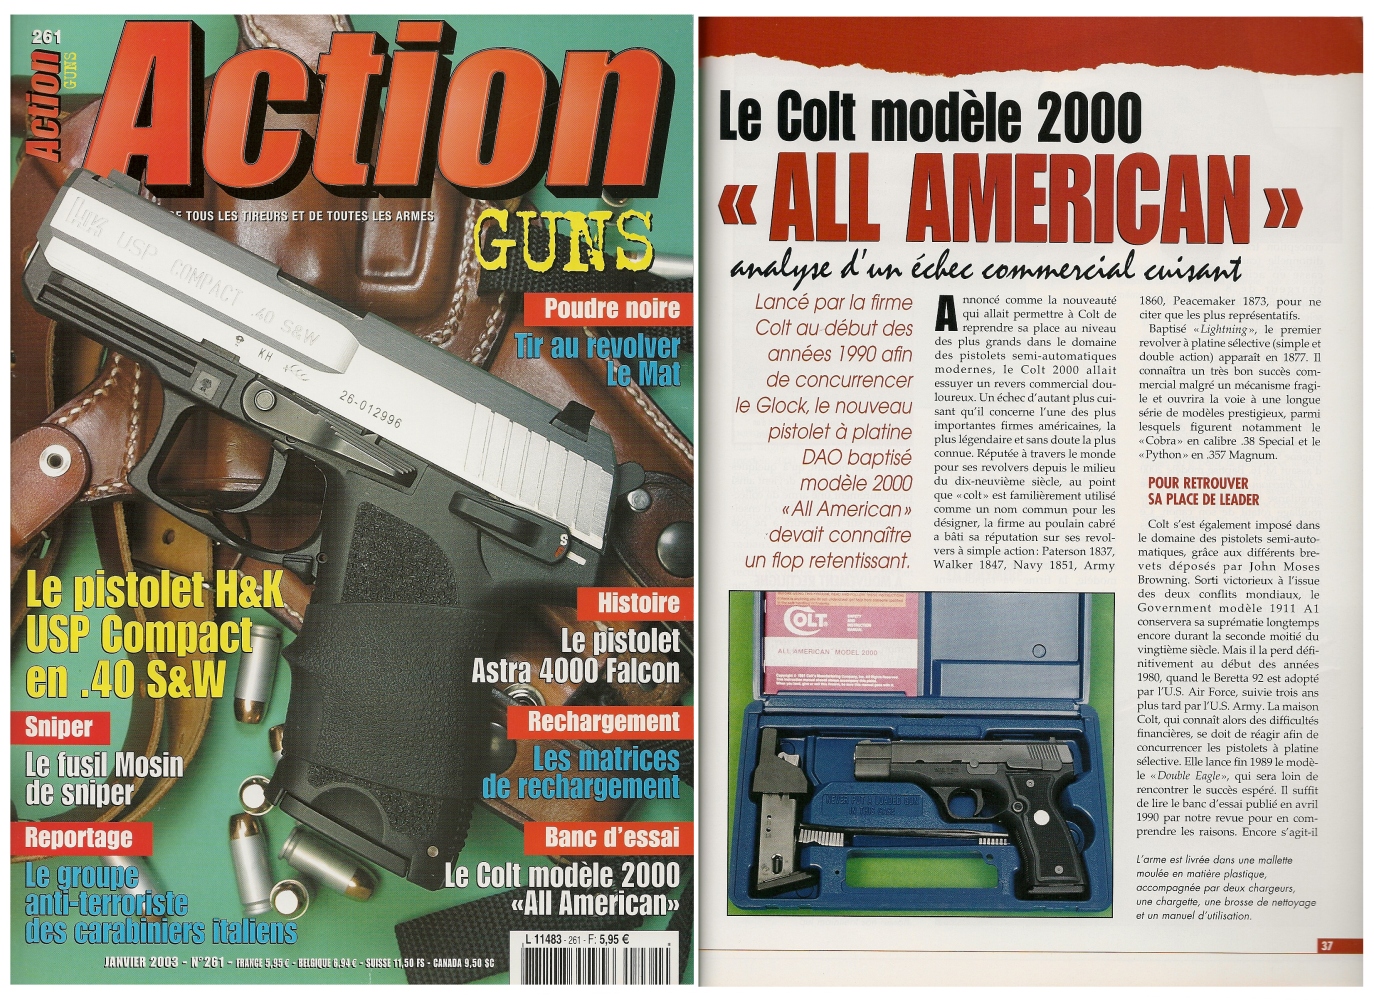 Le banc d'essai du pistolet Colt modèle 2000 « All American » a été publié sur 6 pages dans le magazine Action Guns n° 261 (janvier 2003).